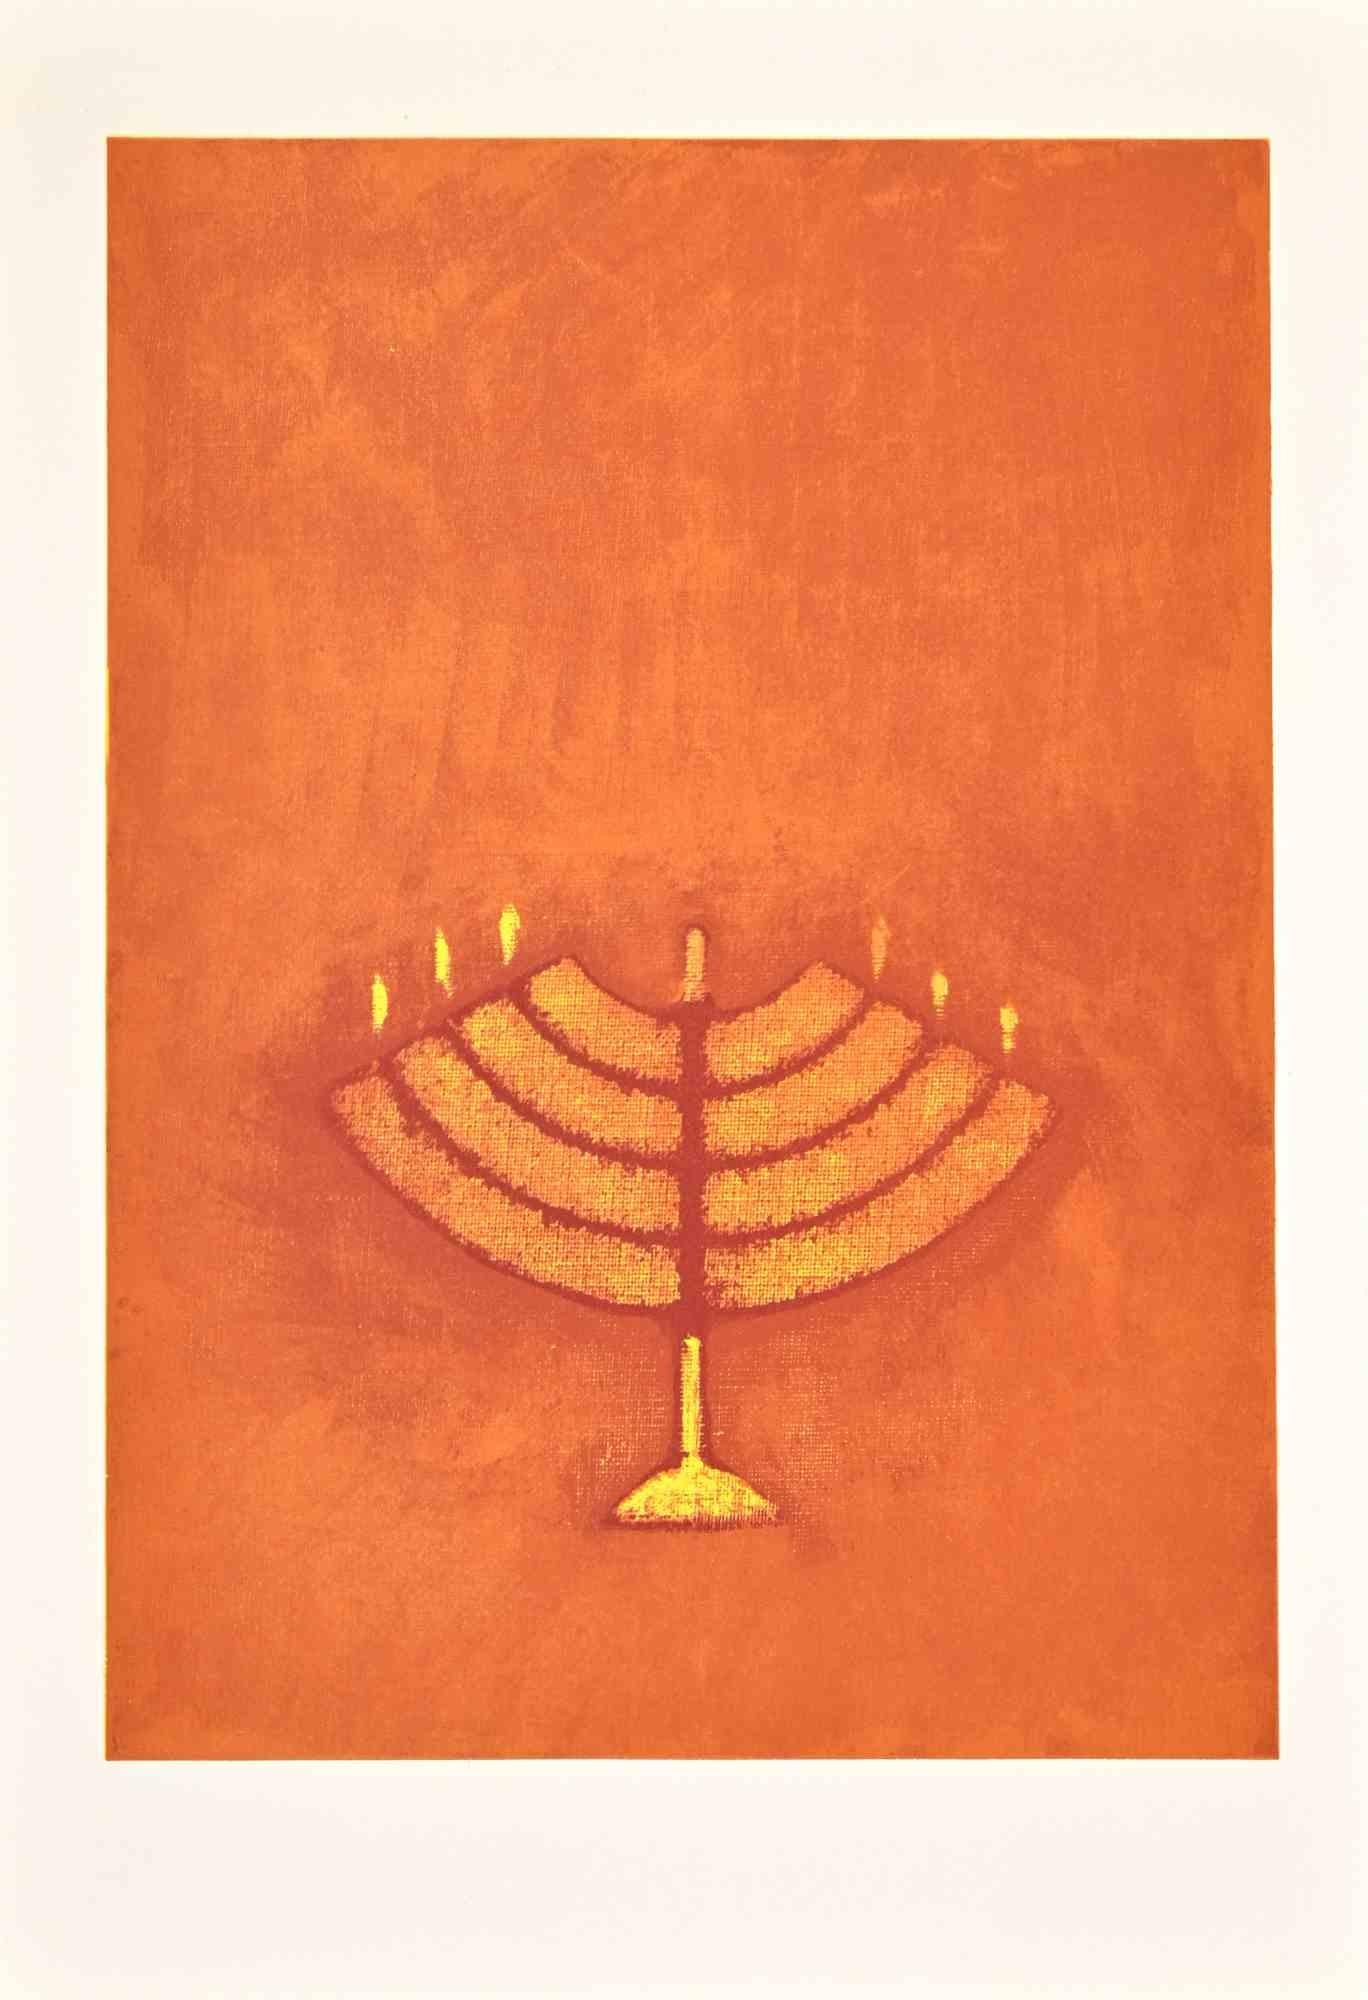 Menorah ist eine Lithographie auf Arches-Papier von Max Ernst aus dem Jahr 1972.

Gehört zu der Suite "Judith". Limitierte Auflage von 500 Stück.

Unsigniert und nicht nummeriert, wie ausgegeben.

Göttliche Bedingungen.

Die Suite wurde zur